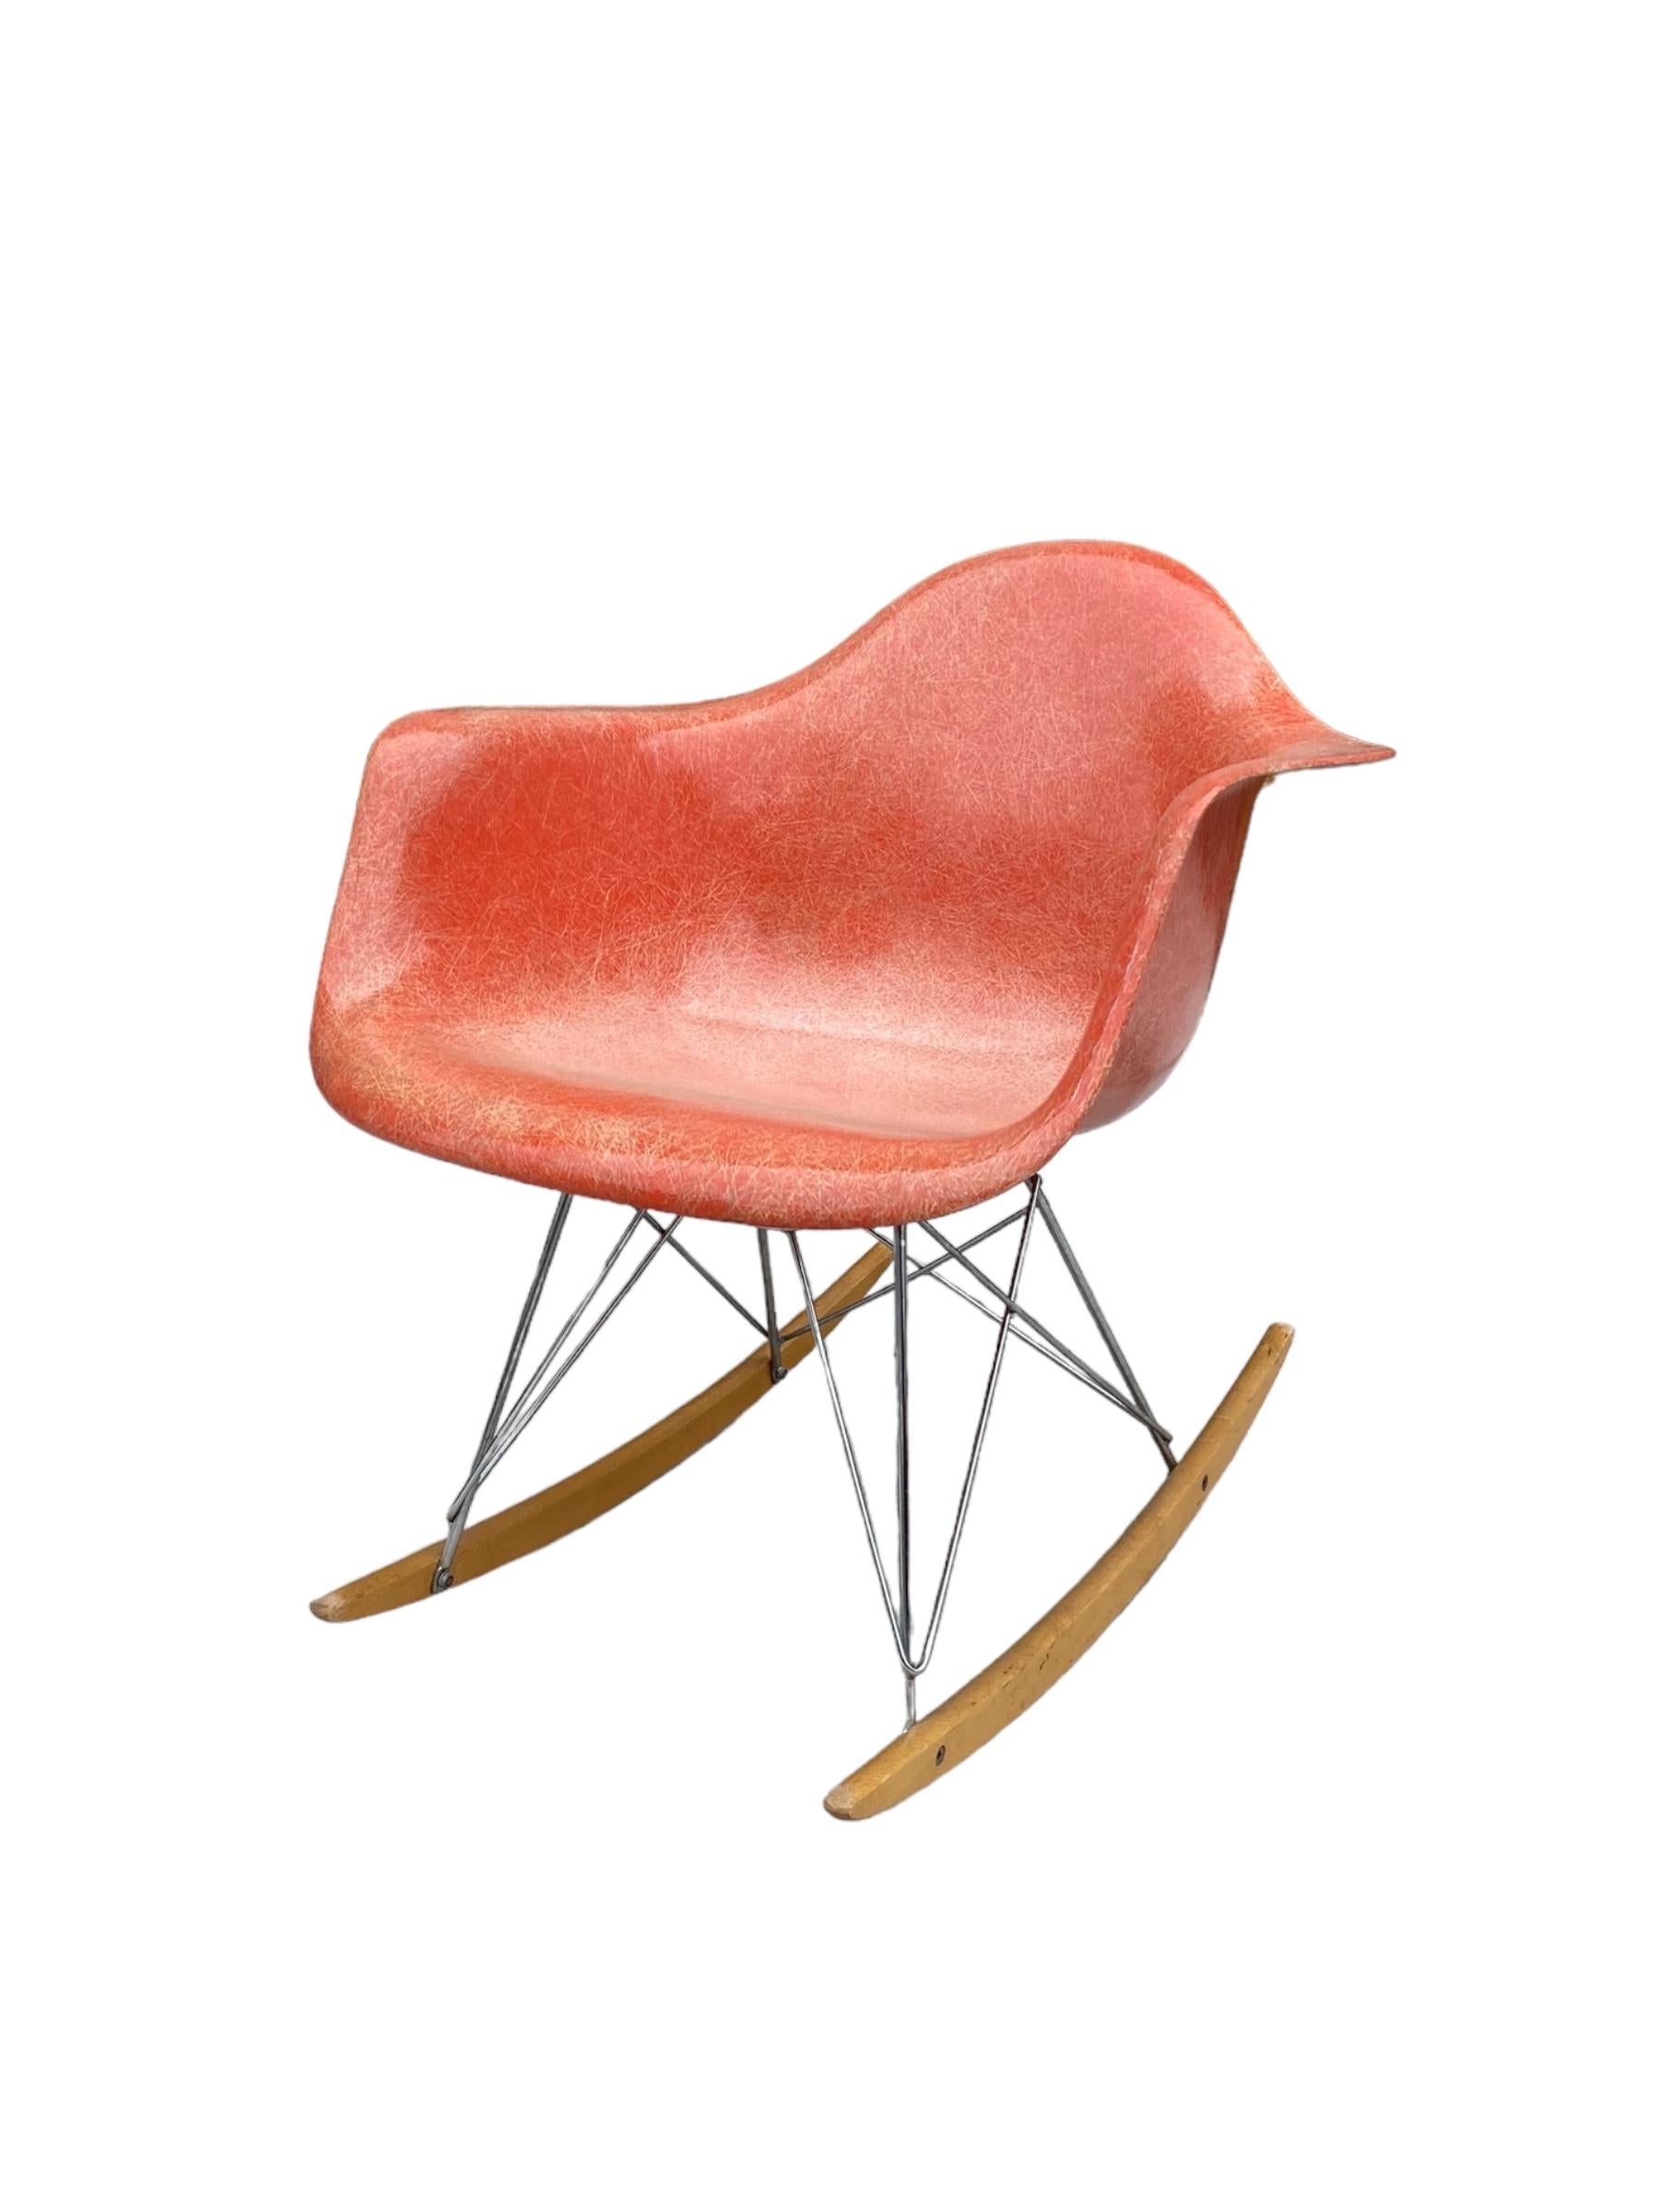 Superbe coque en fibre de verre Herman Miller Eames des années 1950 sur une base de fauteuil à bascule plus tardive. Fibre de verre de couleur rouge orange avec un contraste spectaculaire. Structure de la tige en acier chromé avec des patins en